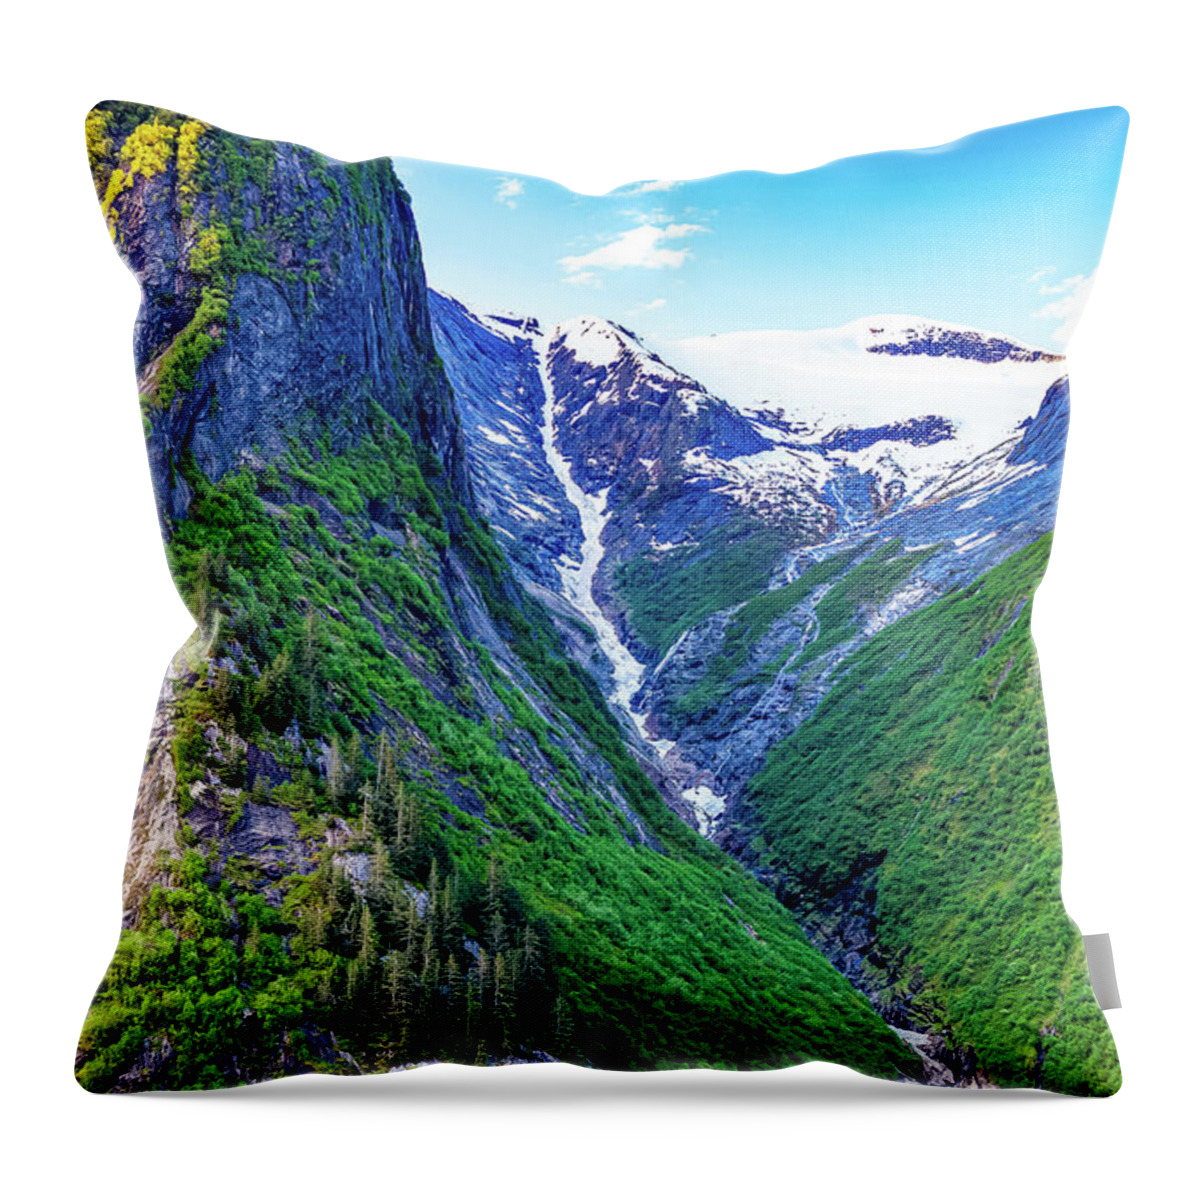 Alaska Throw Pillow featuring the digital art Alaska Inside Passage frozen waterfall by SnapHappy Photos